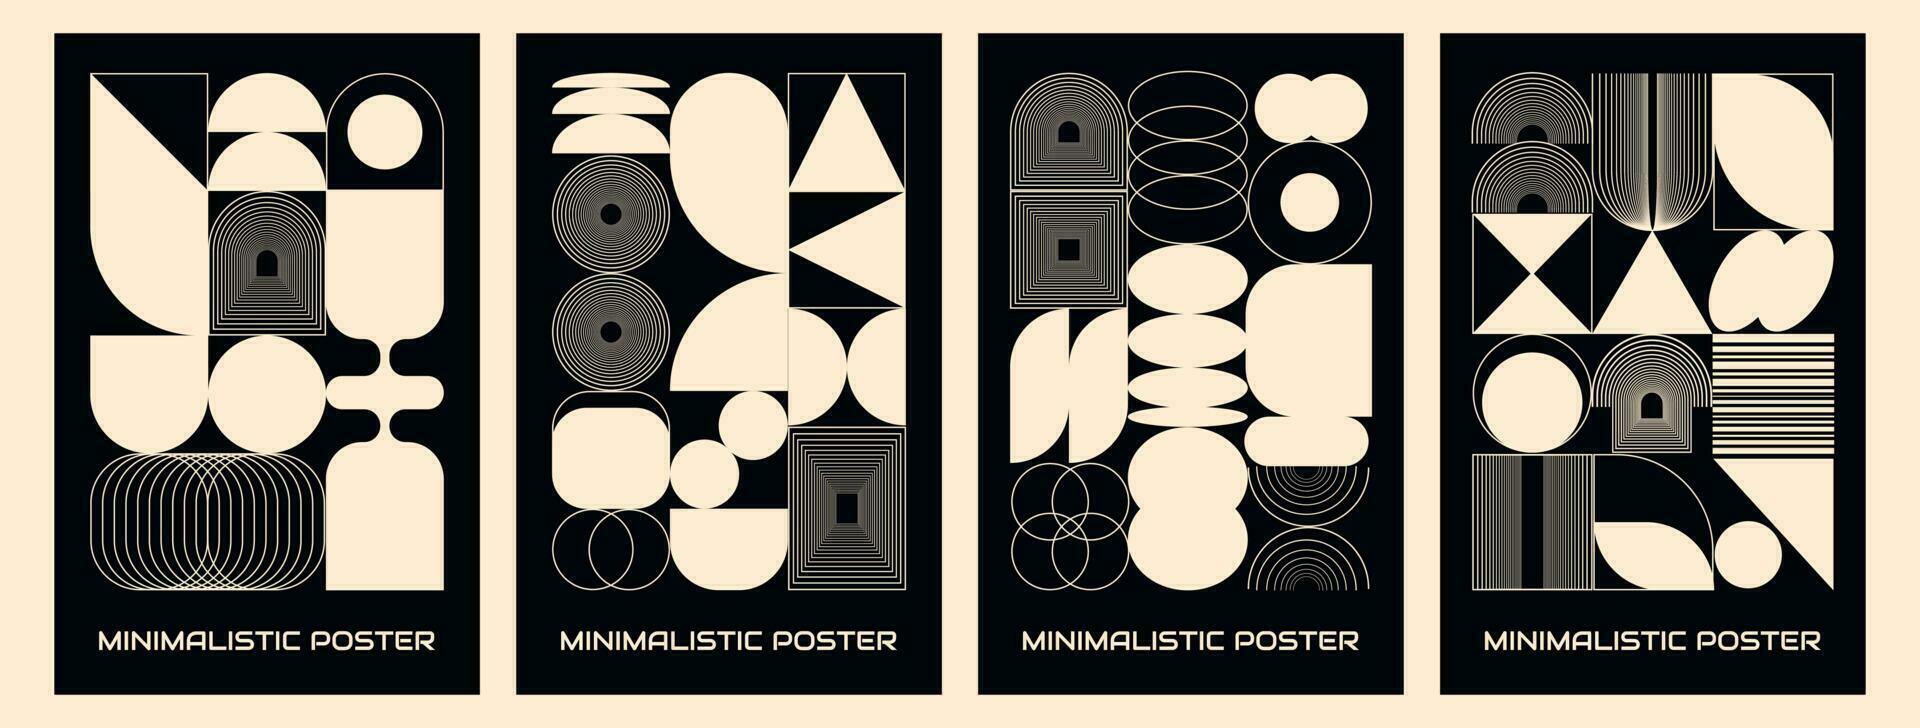 trogen retro vektor minimalistisk affisch med abstrakt former, geometrisk former cirkel, fyrkant, rader, rutnät,. modern vektor design